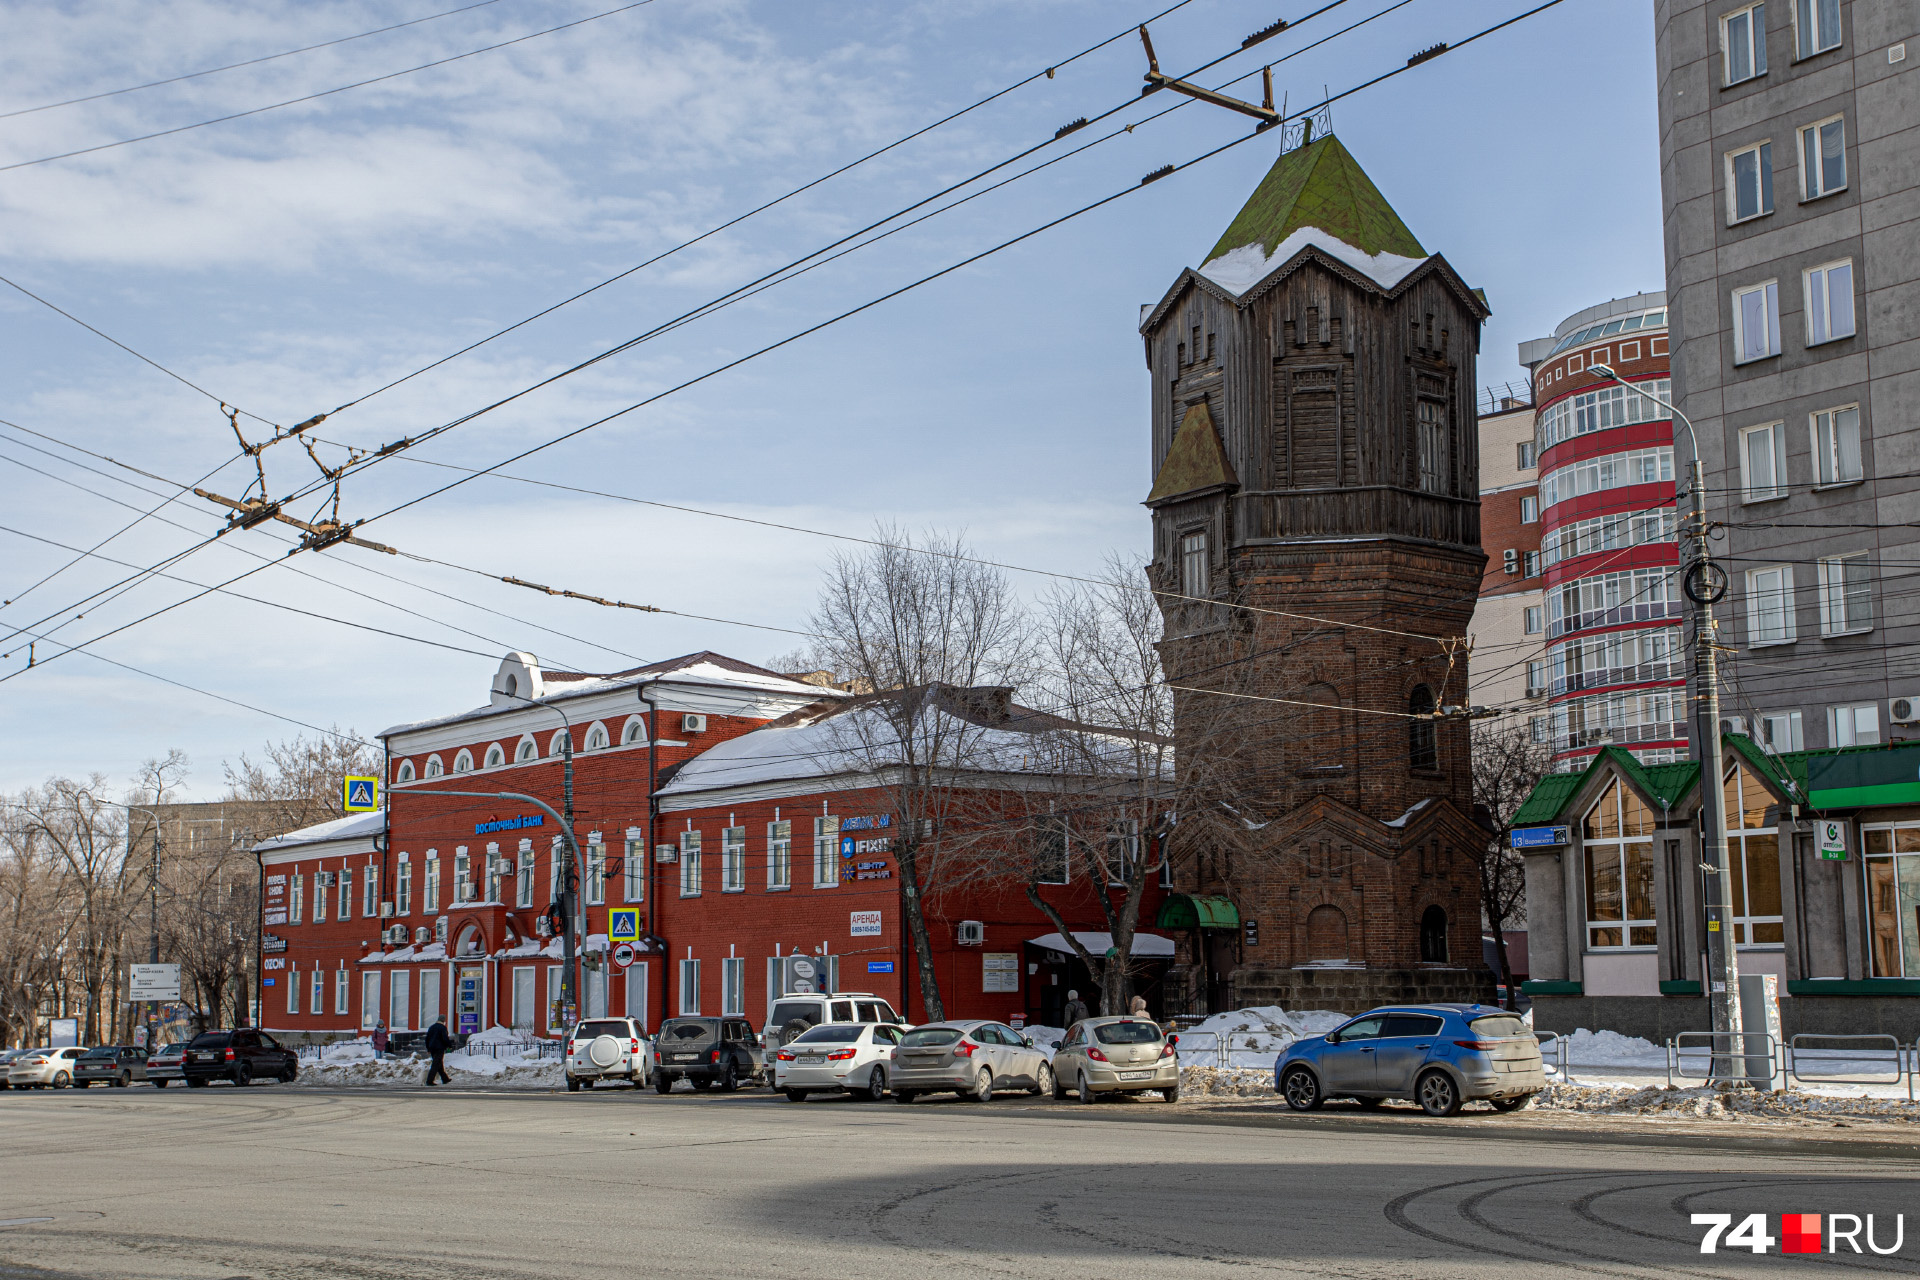 Смена эпох в одном фото: дореволюционная башня, советская баня и постсоветское жилье